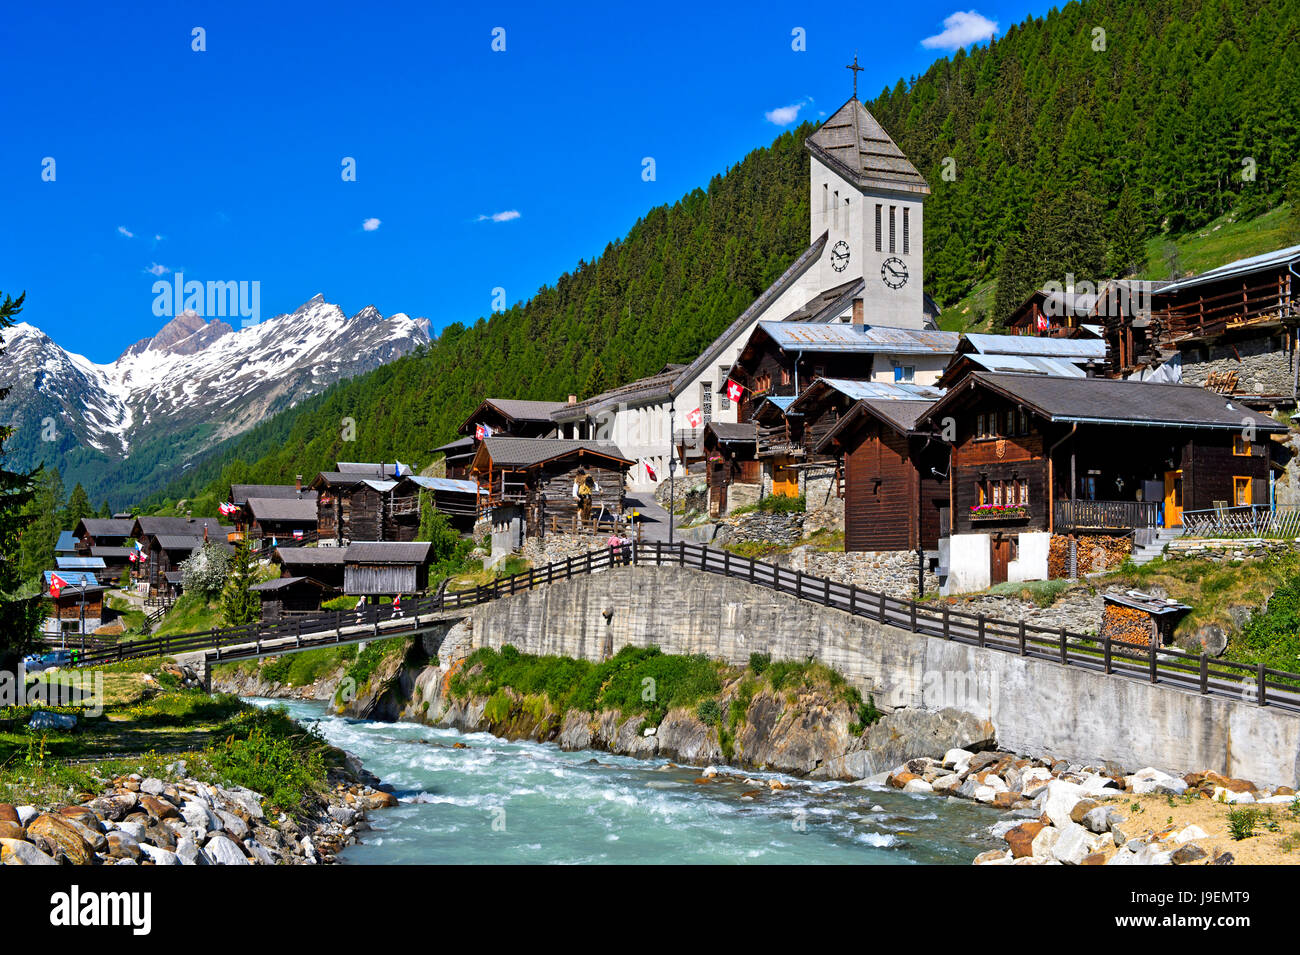 Village de montagne répertoriées avec église s'élevant au-dessus de la rivière Lonza, Blatten, Lötschental, Alpes Pennines, Valais, Suisse Banque D'Images